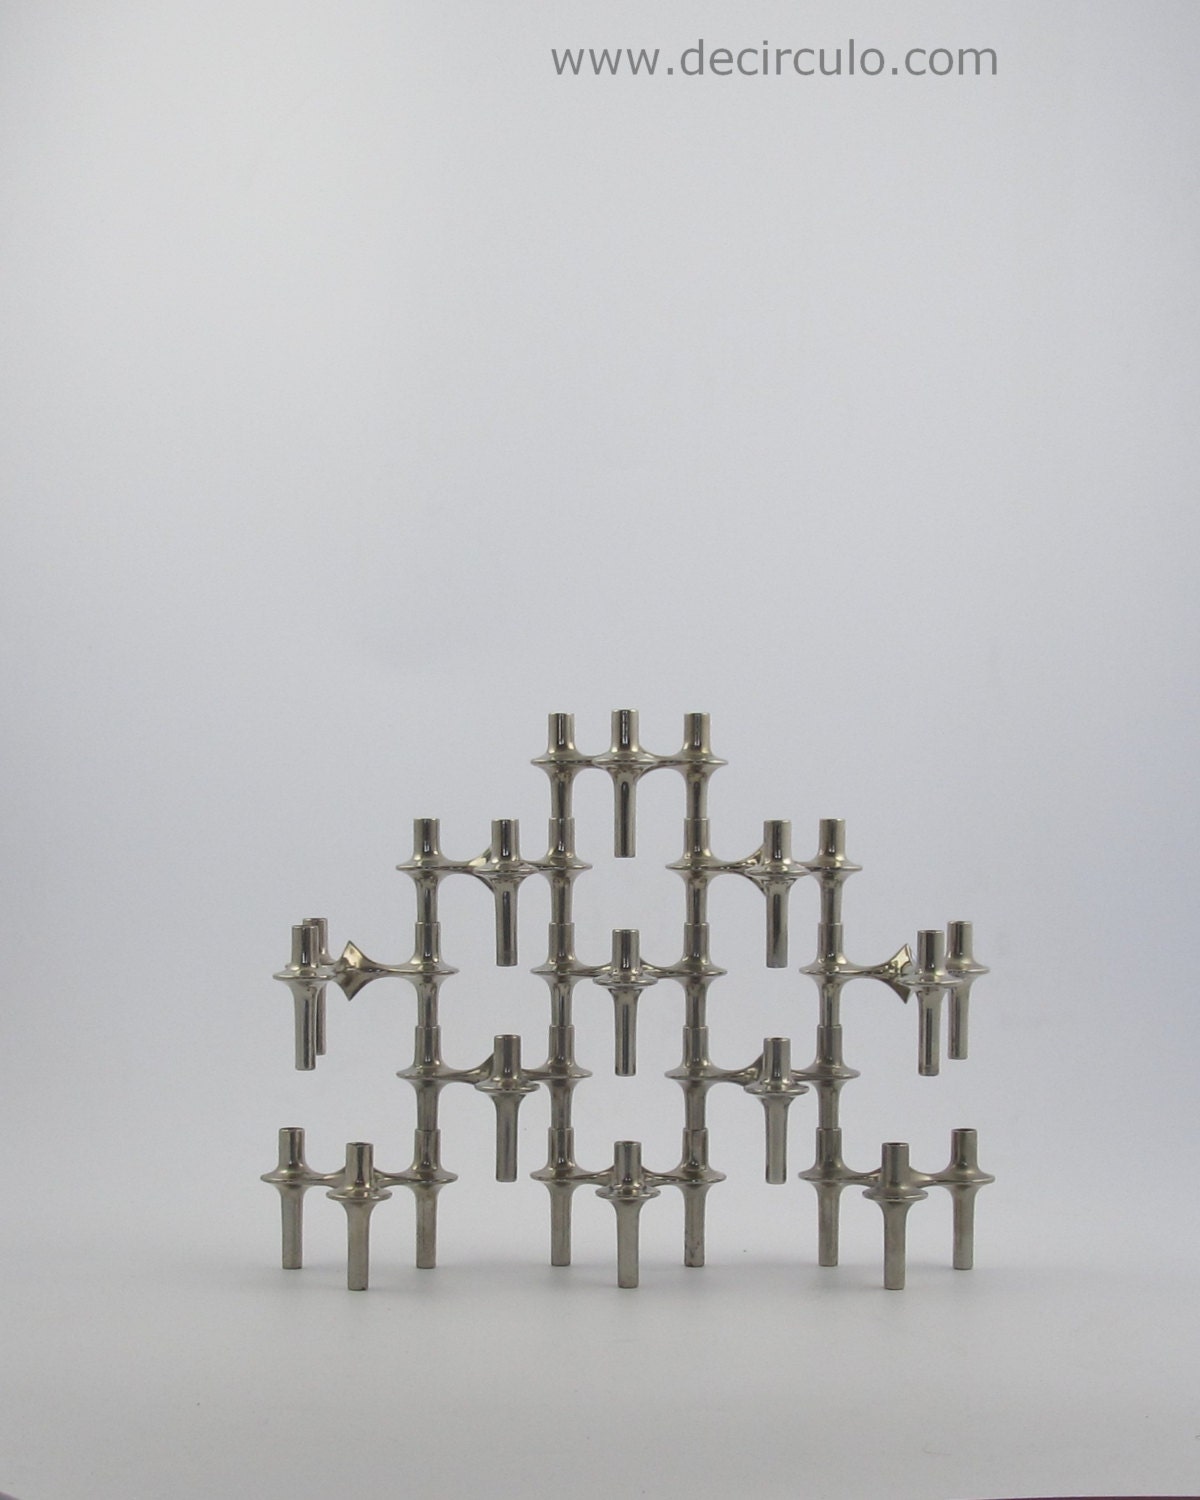 11 nagel candle holders, design vintage stackable bmf candle stick holders